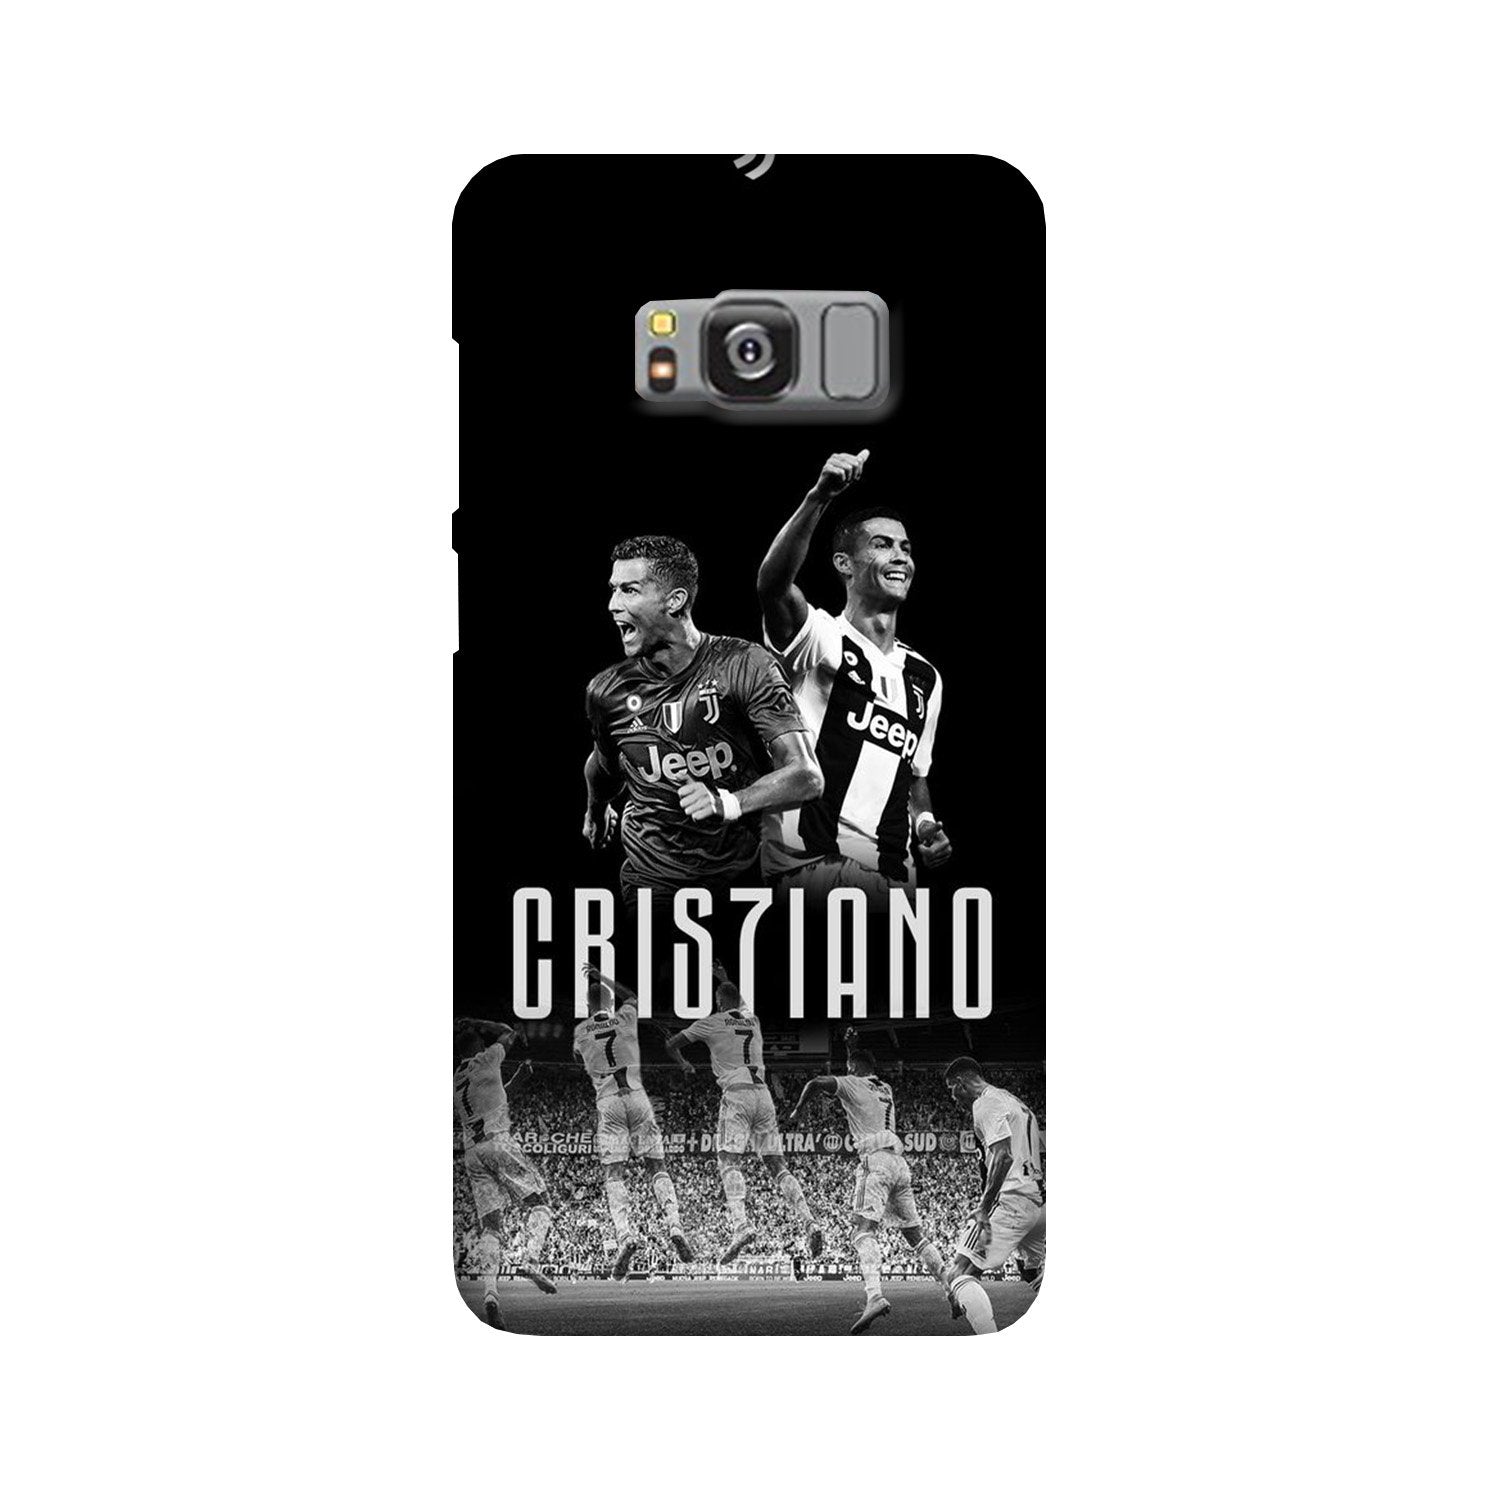 Cristiano Case for Galaxy S8(Design - 165)